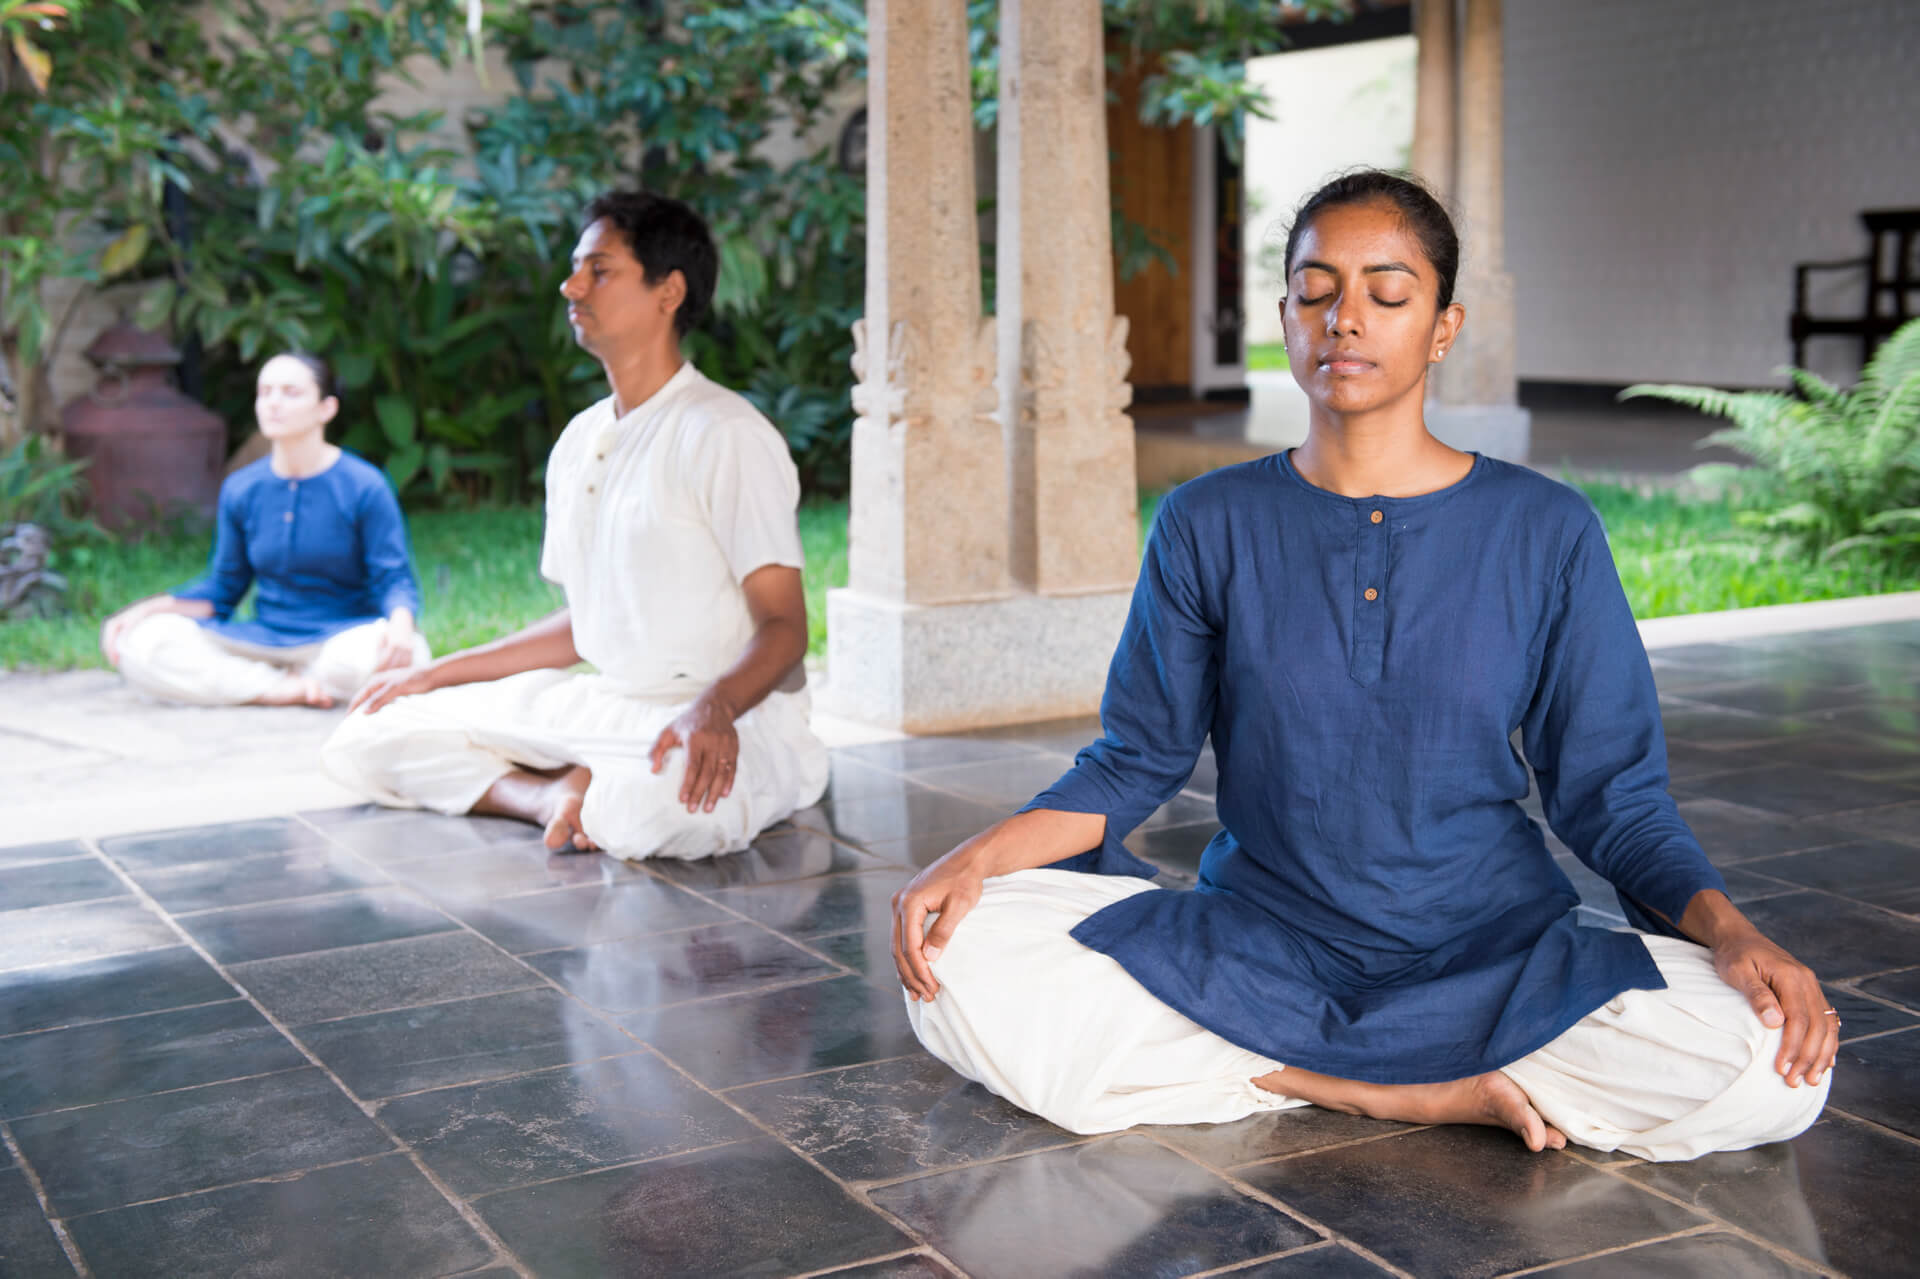 NOW YOGA TAMPA – Classical Hatha Yoga Programs Tampa